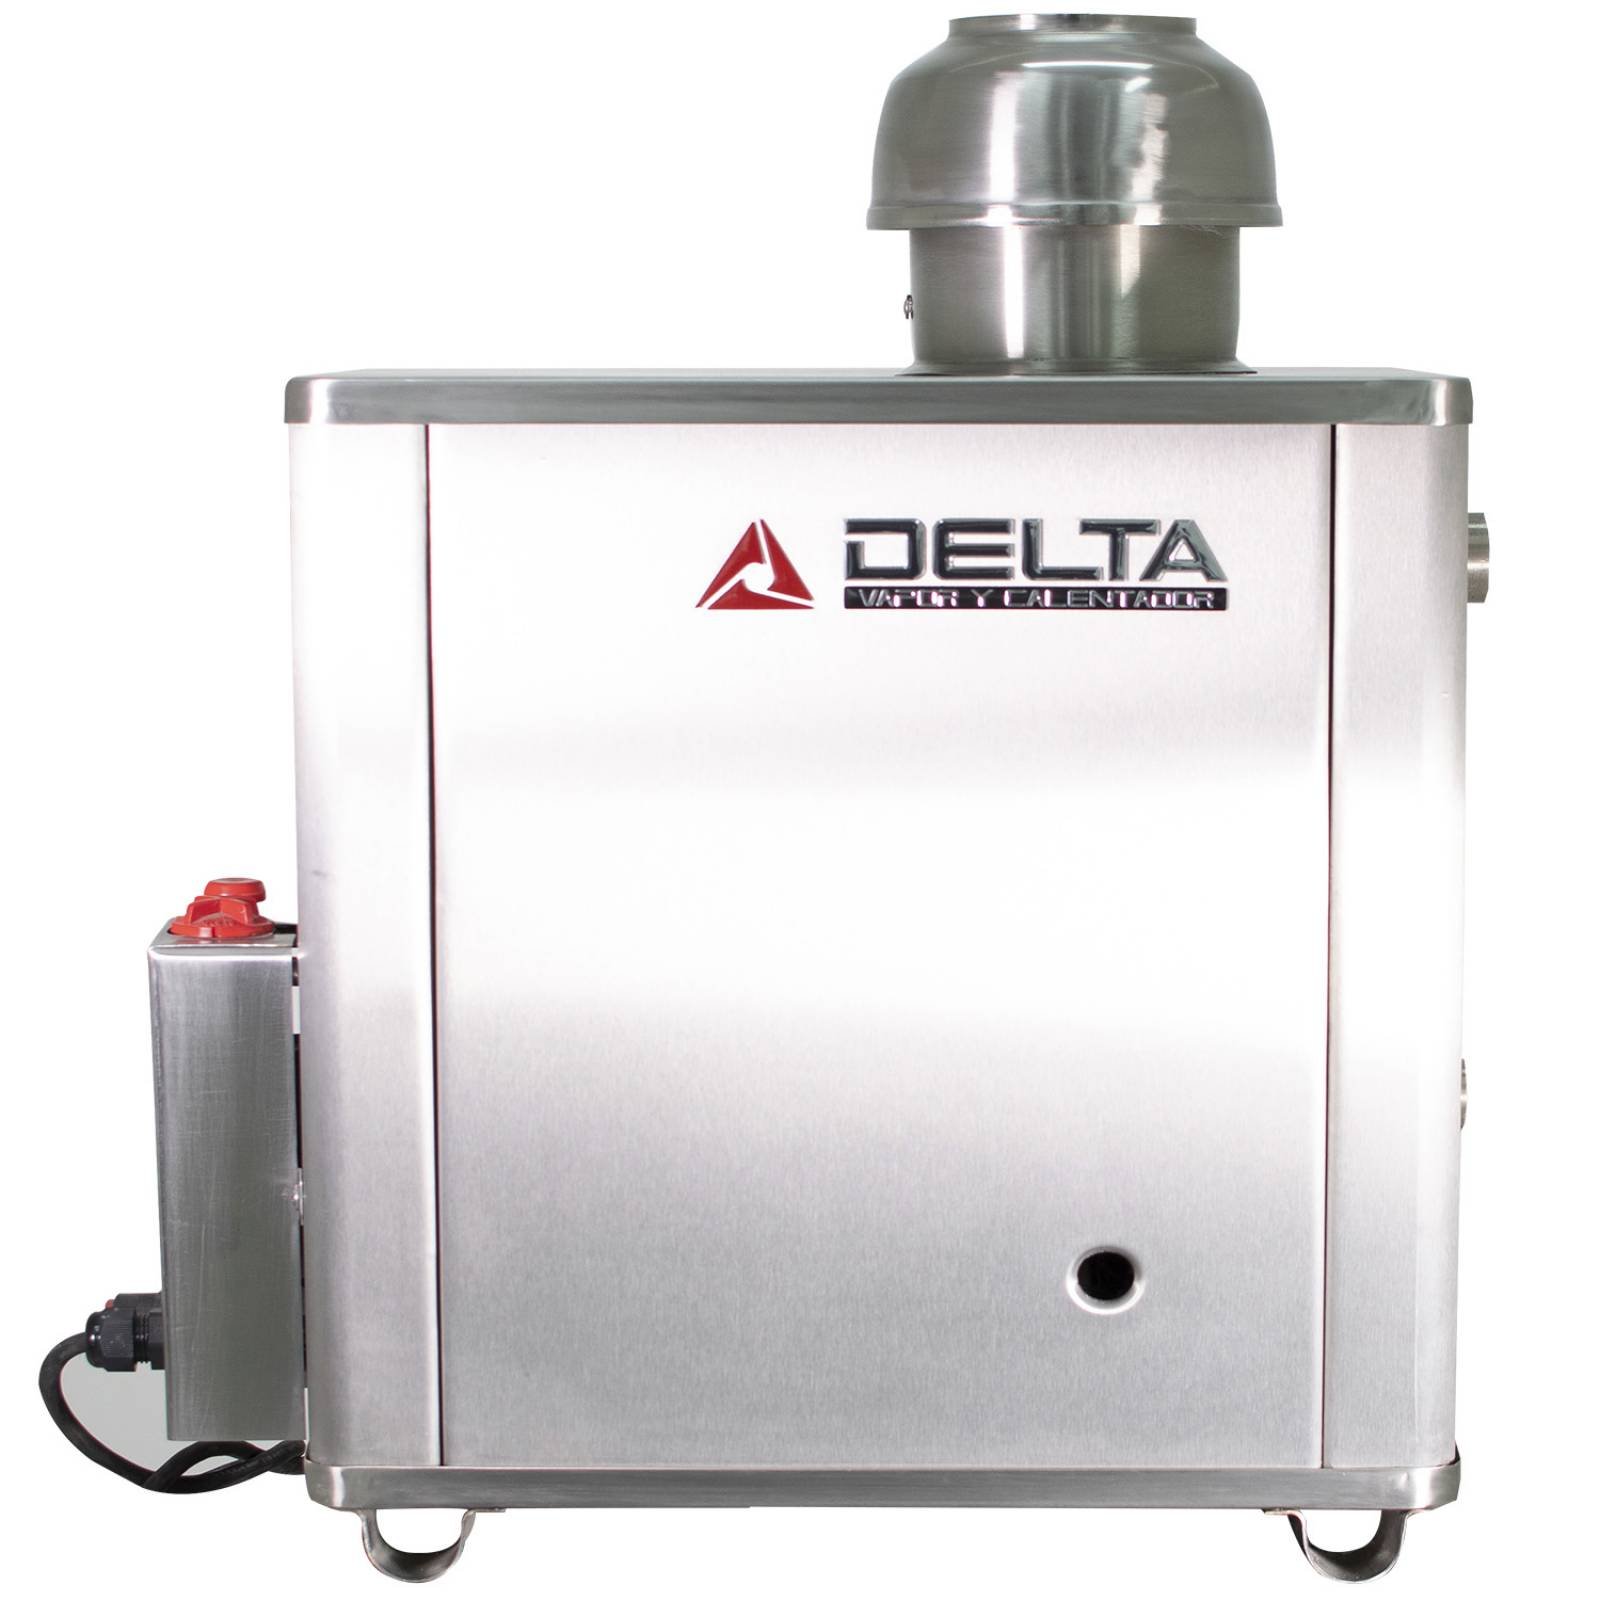 Generador de Vapor Diseñado para Hogar Instalación en Espacios de 5 m. Cúbicos Gas LP Delta Acero Inoxidable